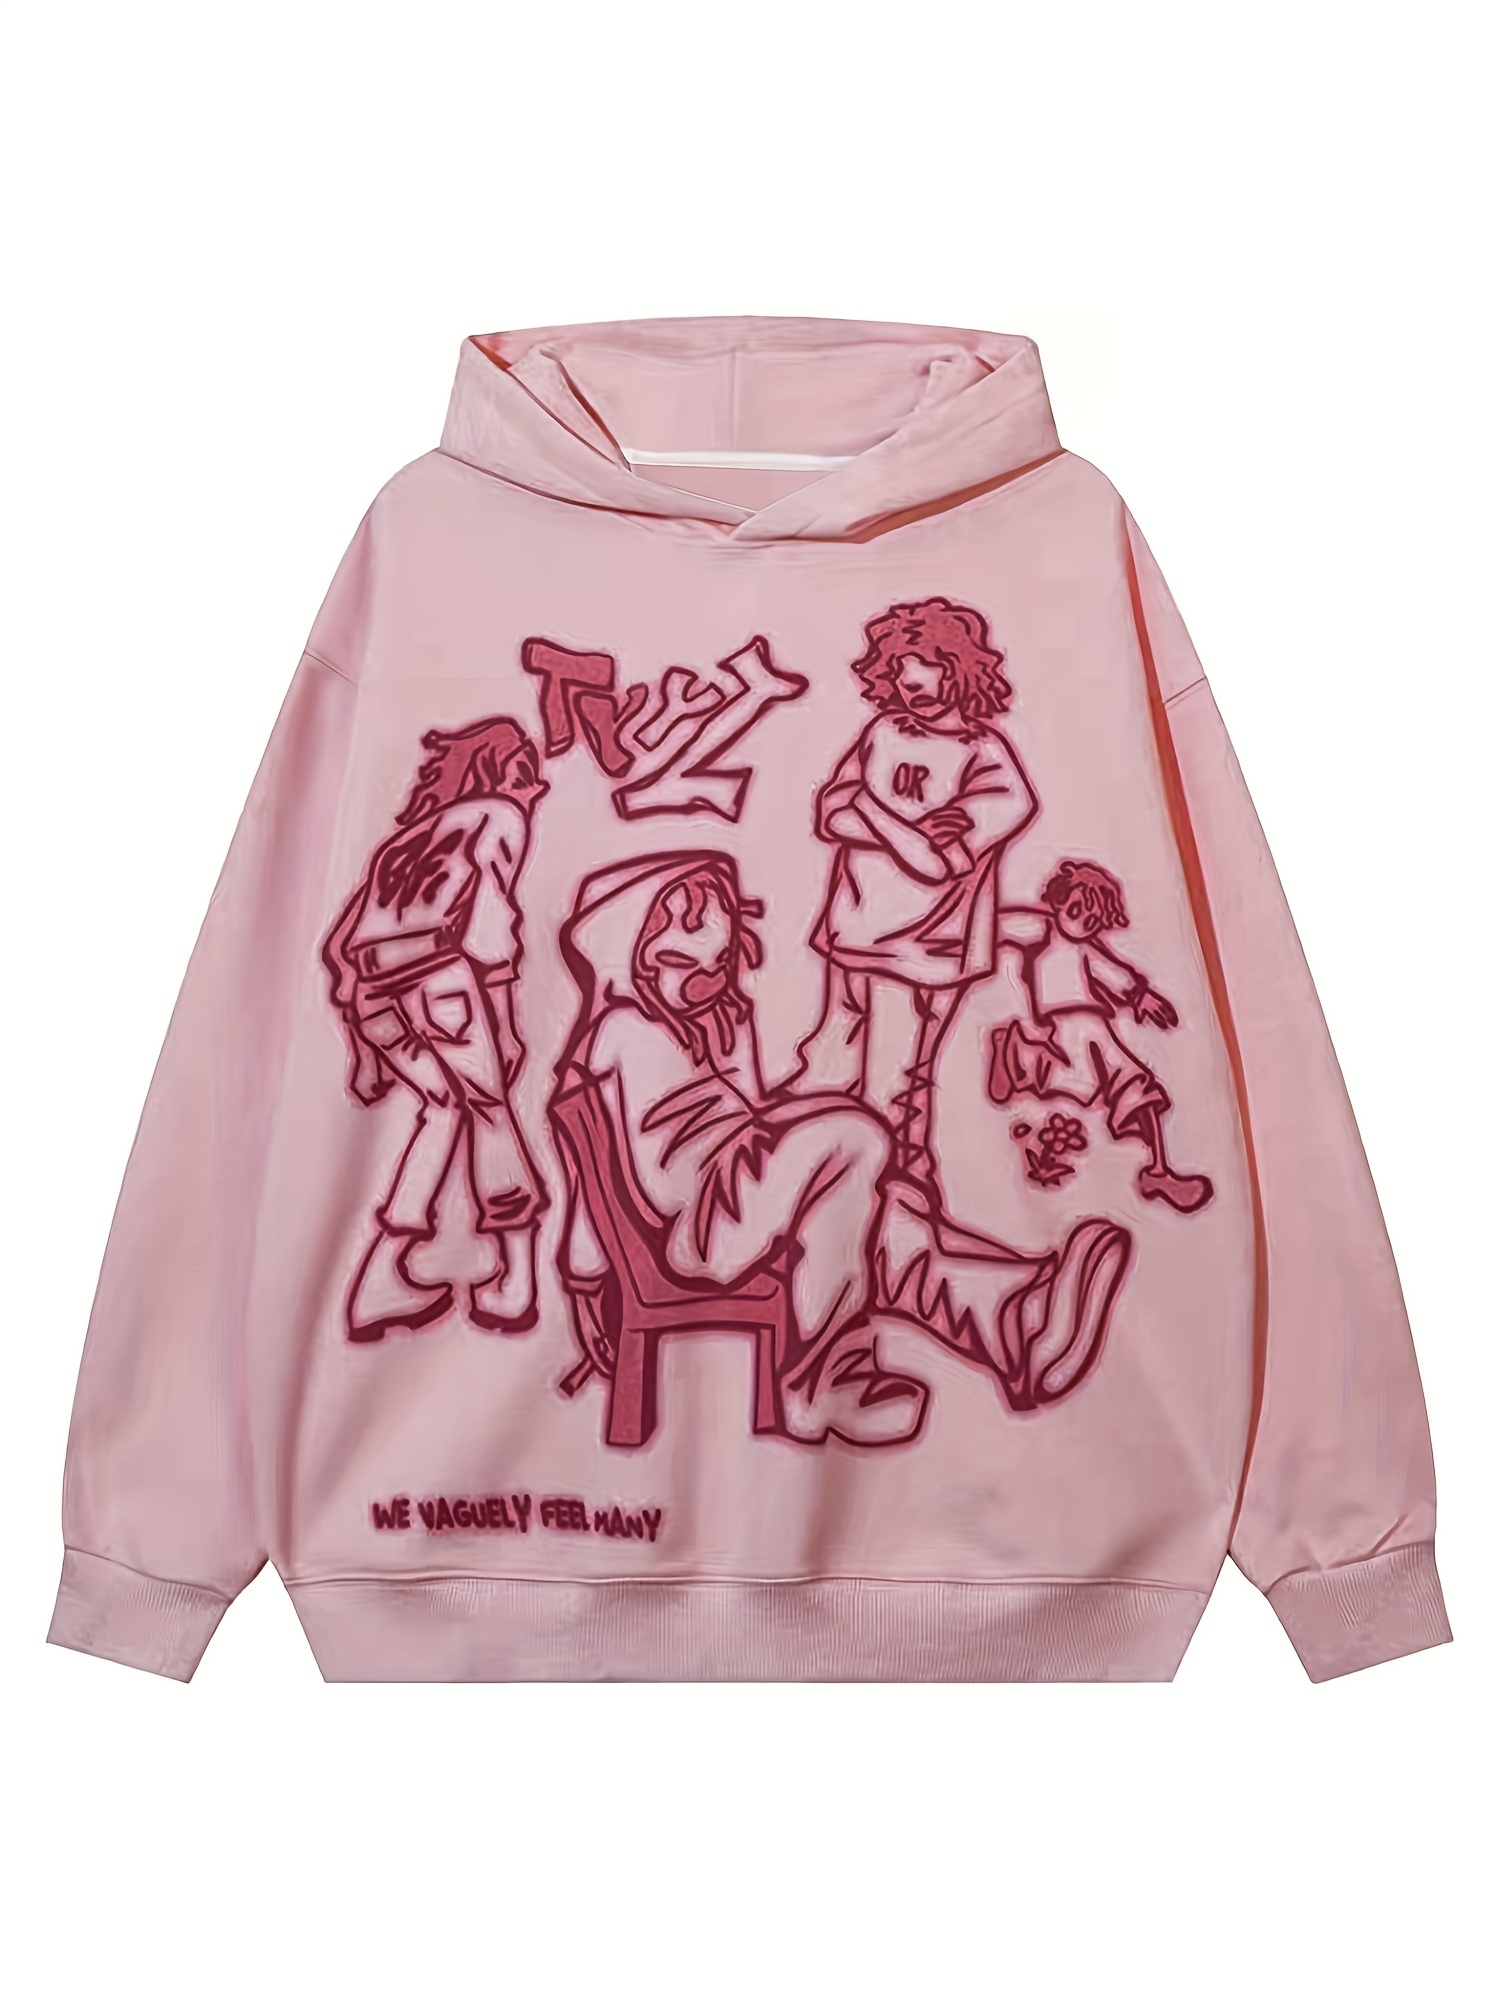 Rapper Juice Wrld 999 Hip Hop Oversized Hoodie Autumn Winter Men Women  Casual Loose Sweatshirt Unisex Fashion Vintage Streetwear - AliExpress